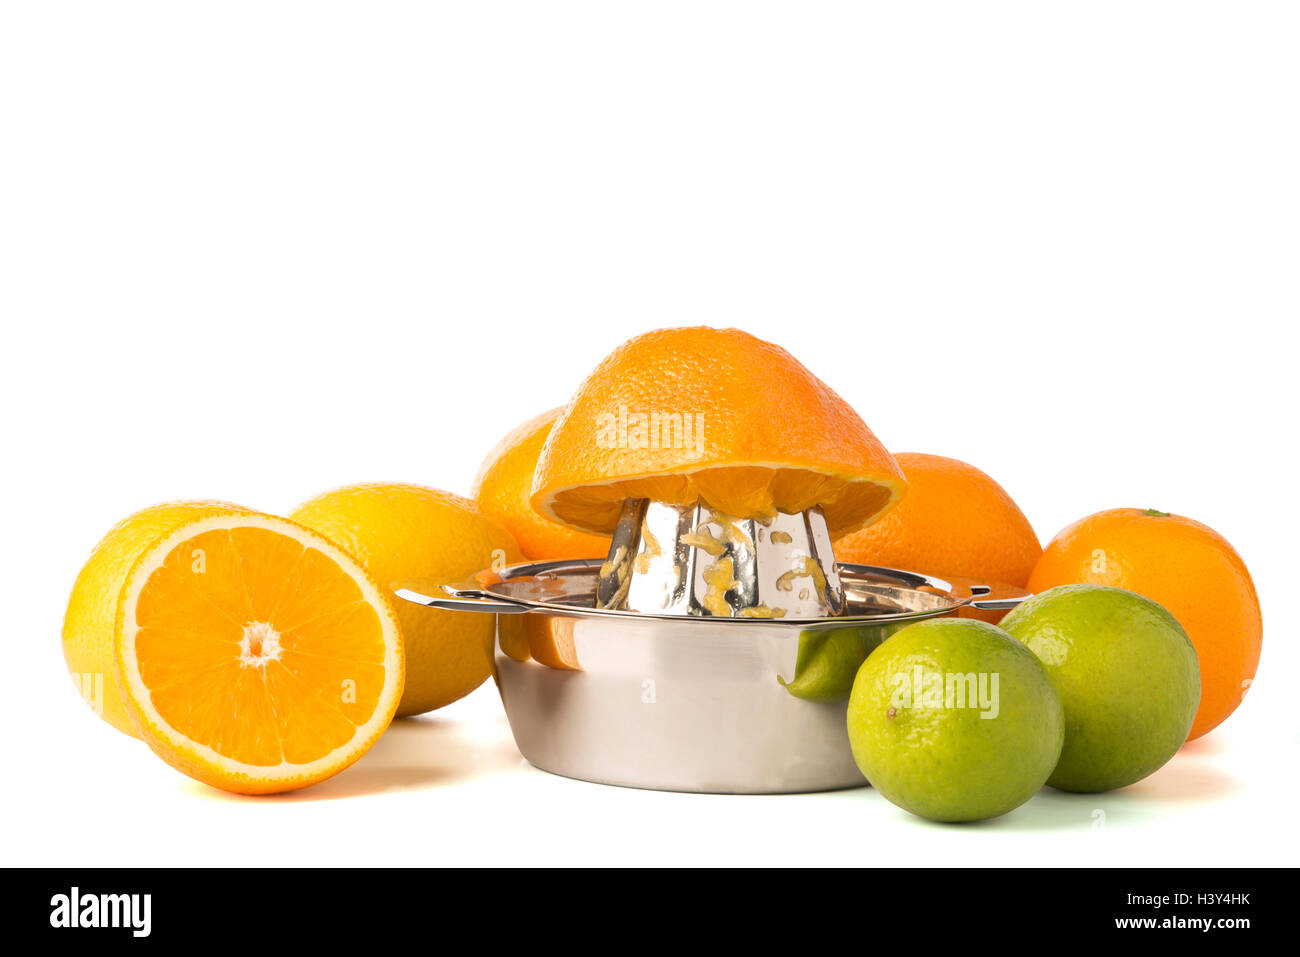 Spremiagrumi Manuale, Citrus Spremiagrumi per Arance, Limoni, Agrumi,  Pressa Arance Limone Limoni Premi Agrumi, con la Ciotola Juicer Strainer di